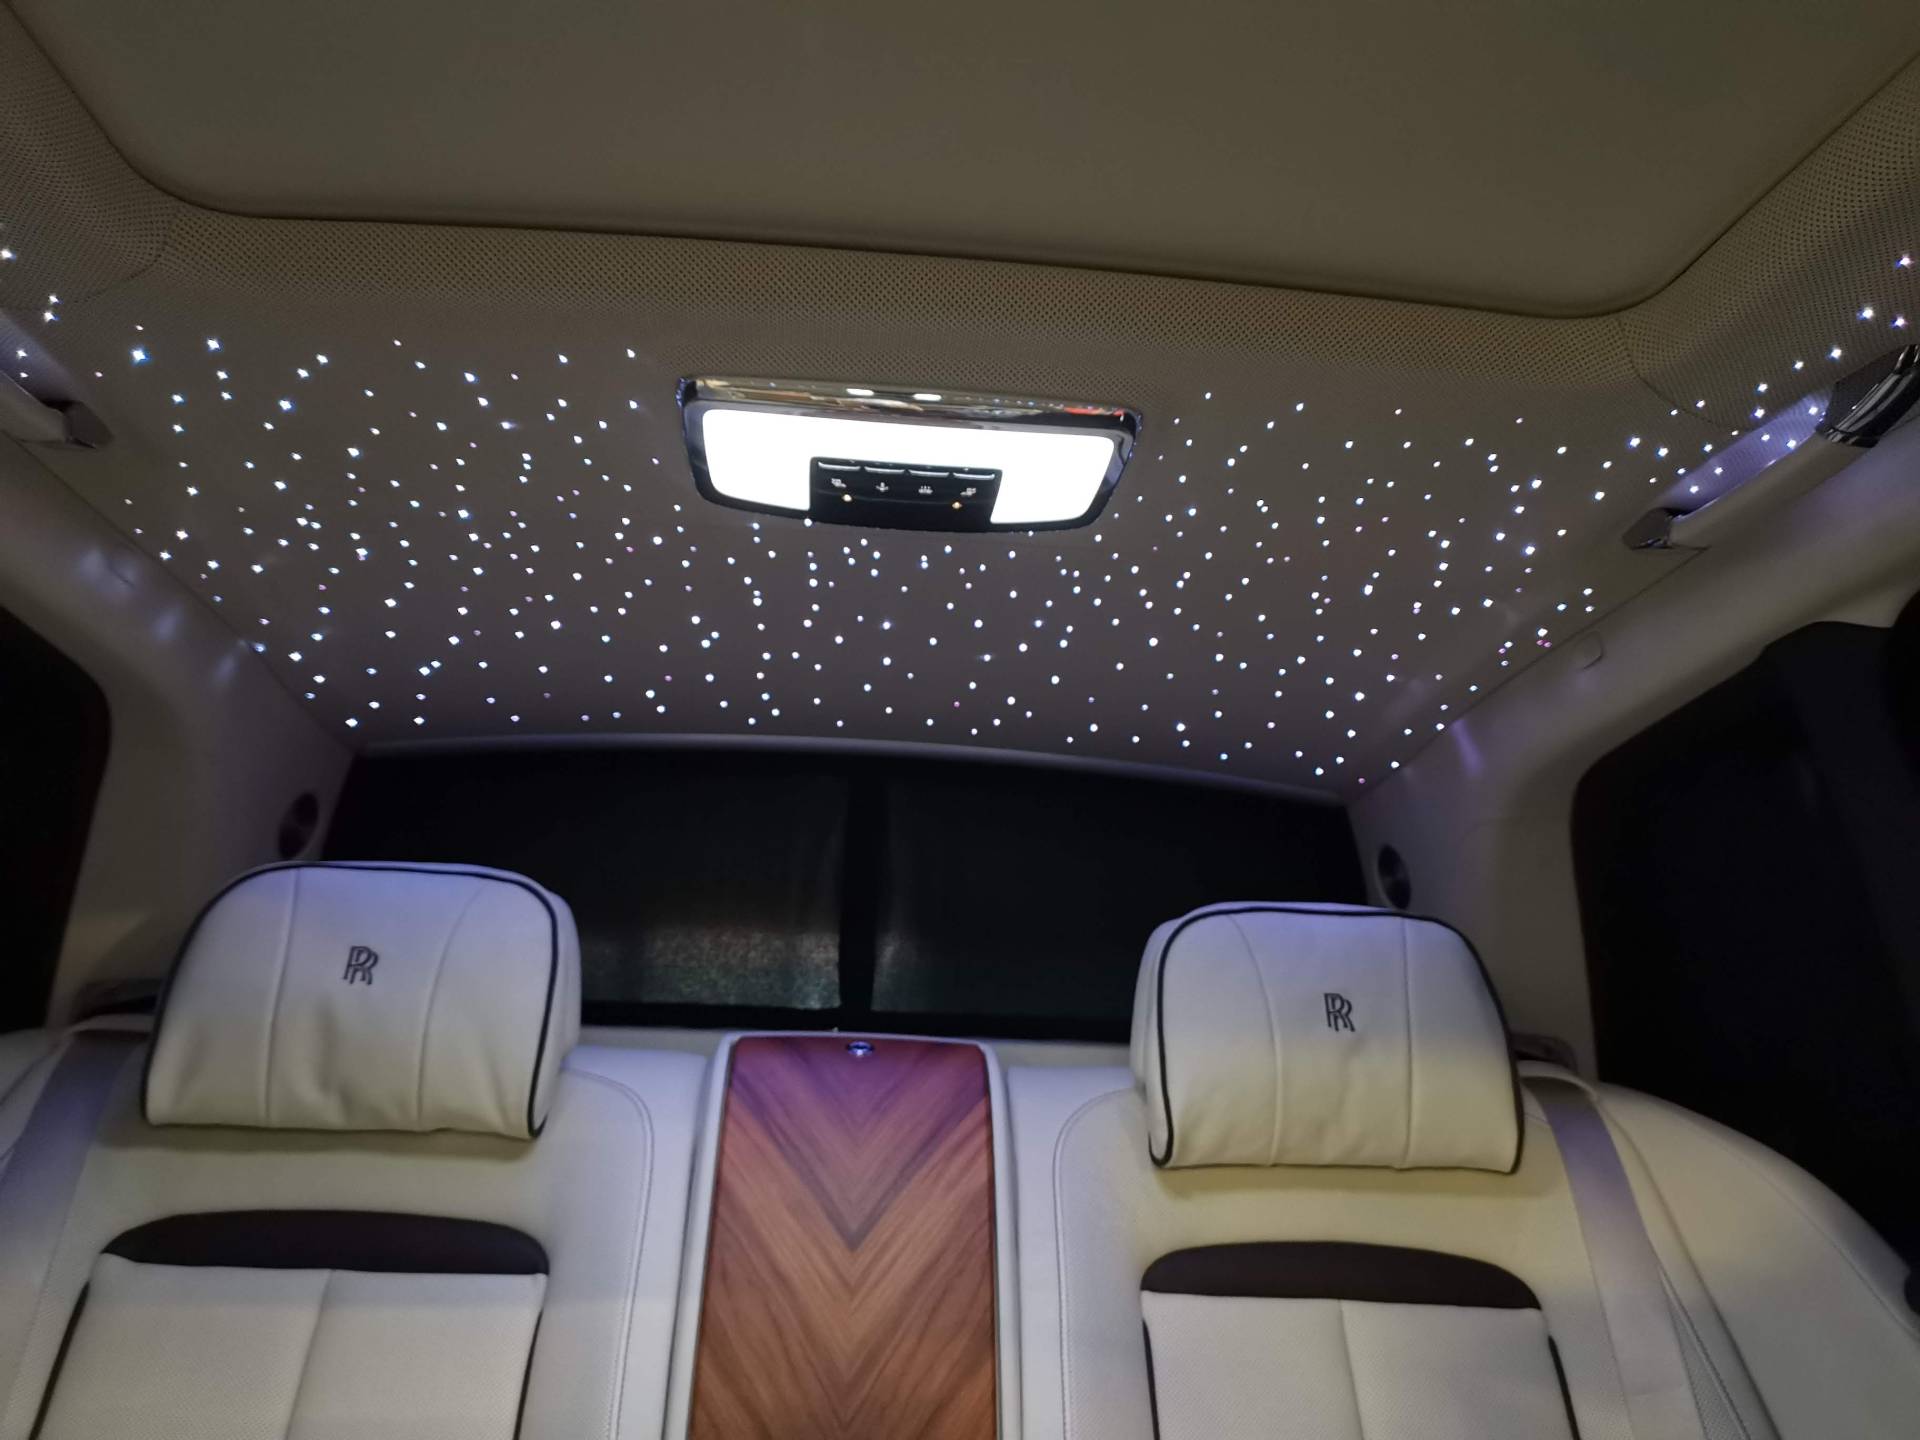 Was ist das Geheimnis des LED Sternenhimmels für das Auto?